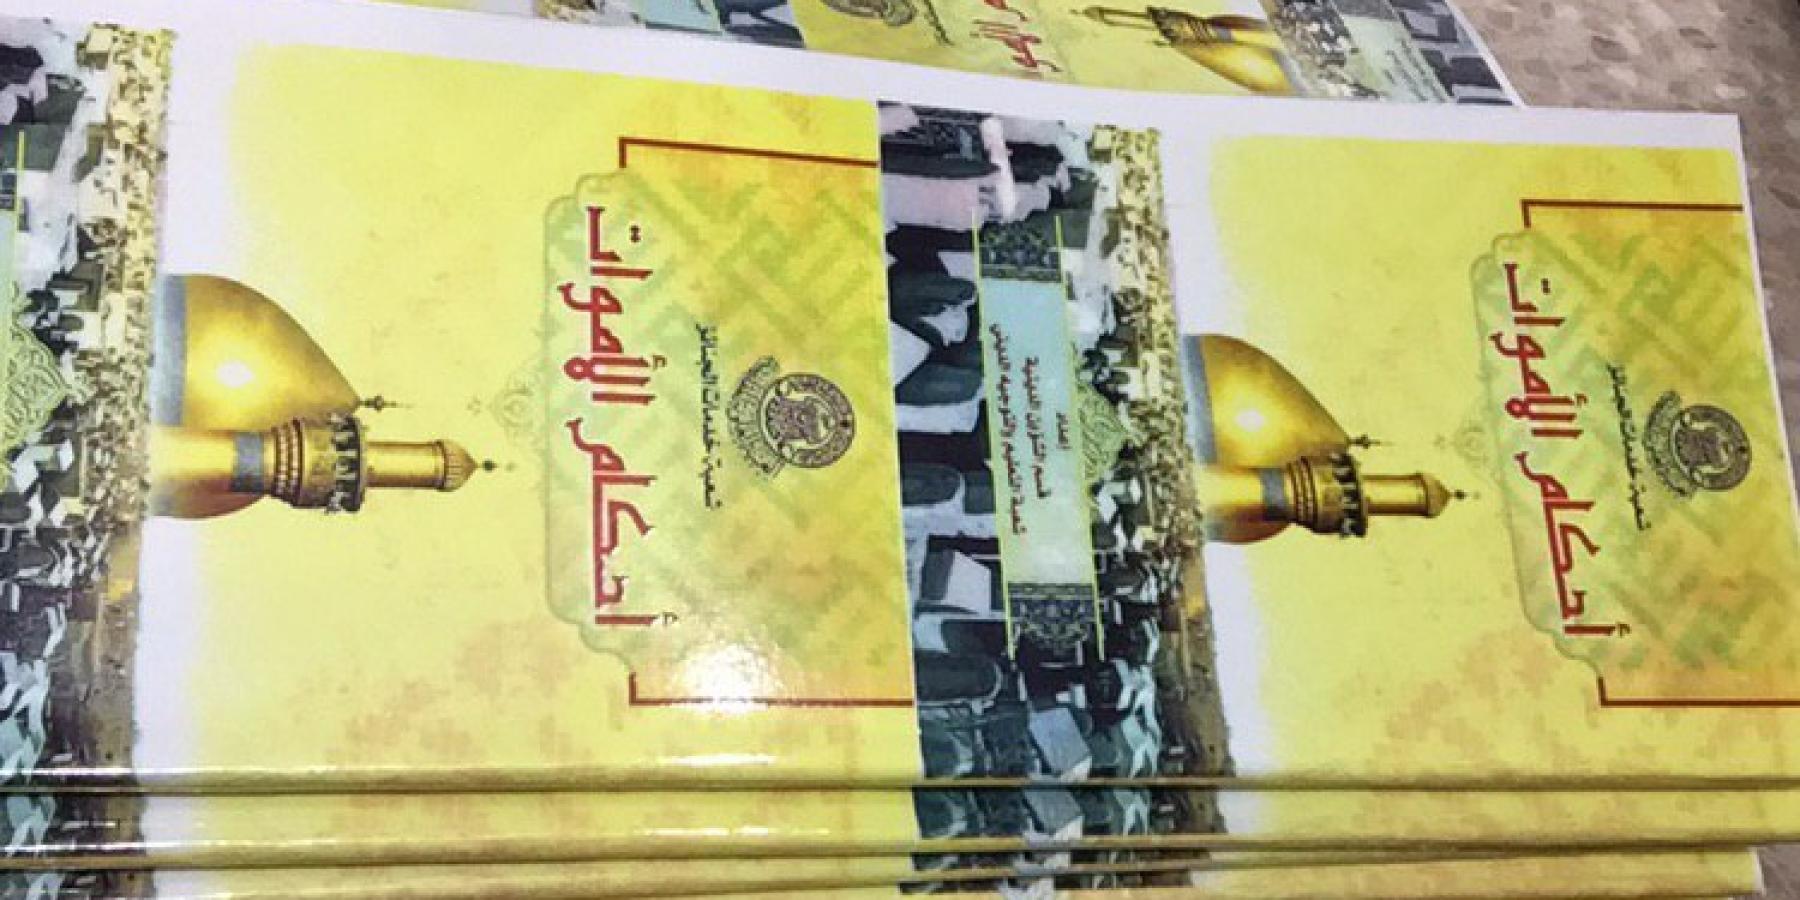 بحلول العام 2019 / دار أبو طالب في العتبة العلوية تطبع 10 آلاف نسخة من كتيب أحكام الموتى الخاص بالجنائز